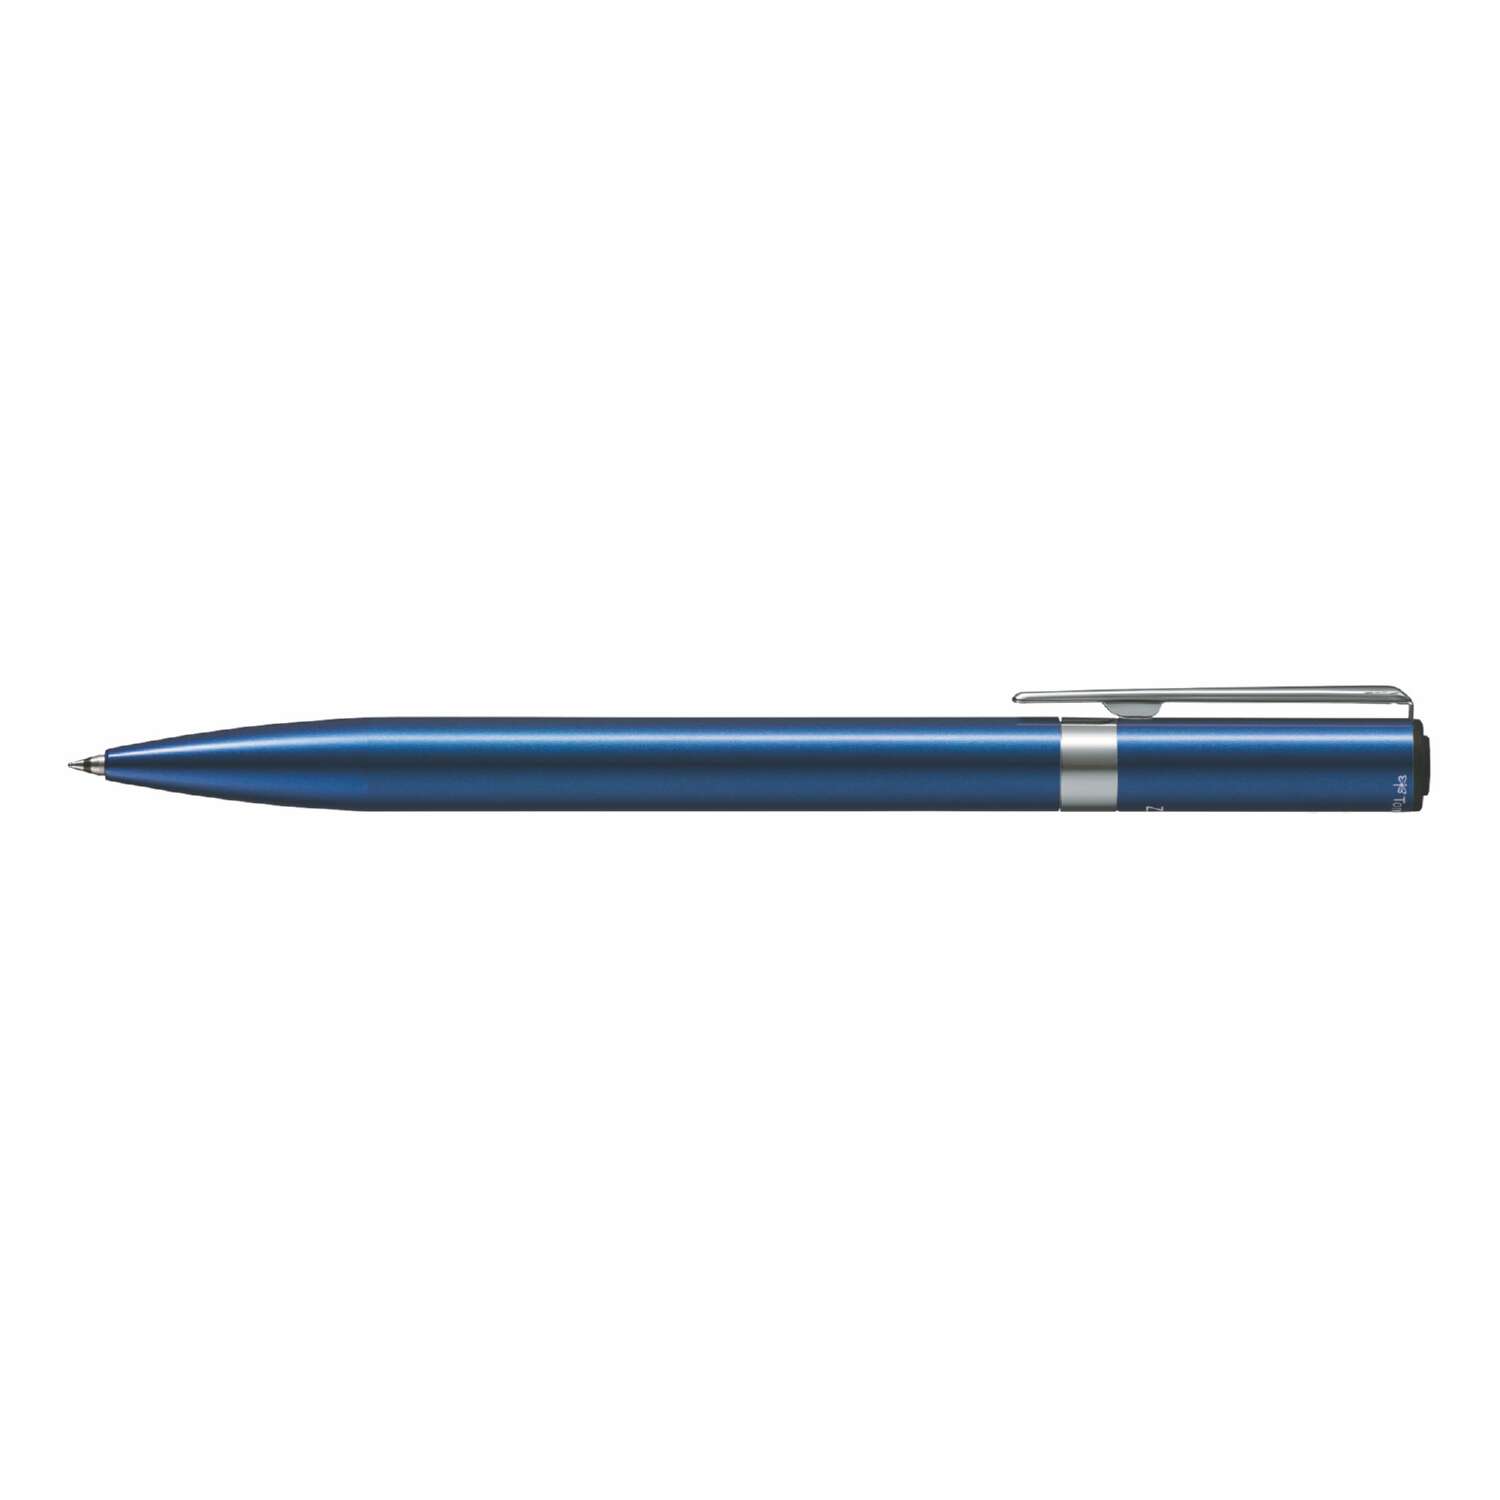 Ручка шариковая Tombow ZOOM L105 City черная корпус синий линия 0.7 мм подарочная упаковка - фото 2